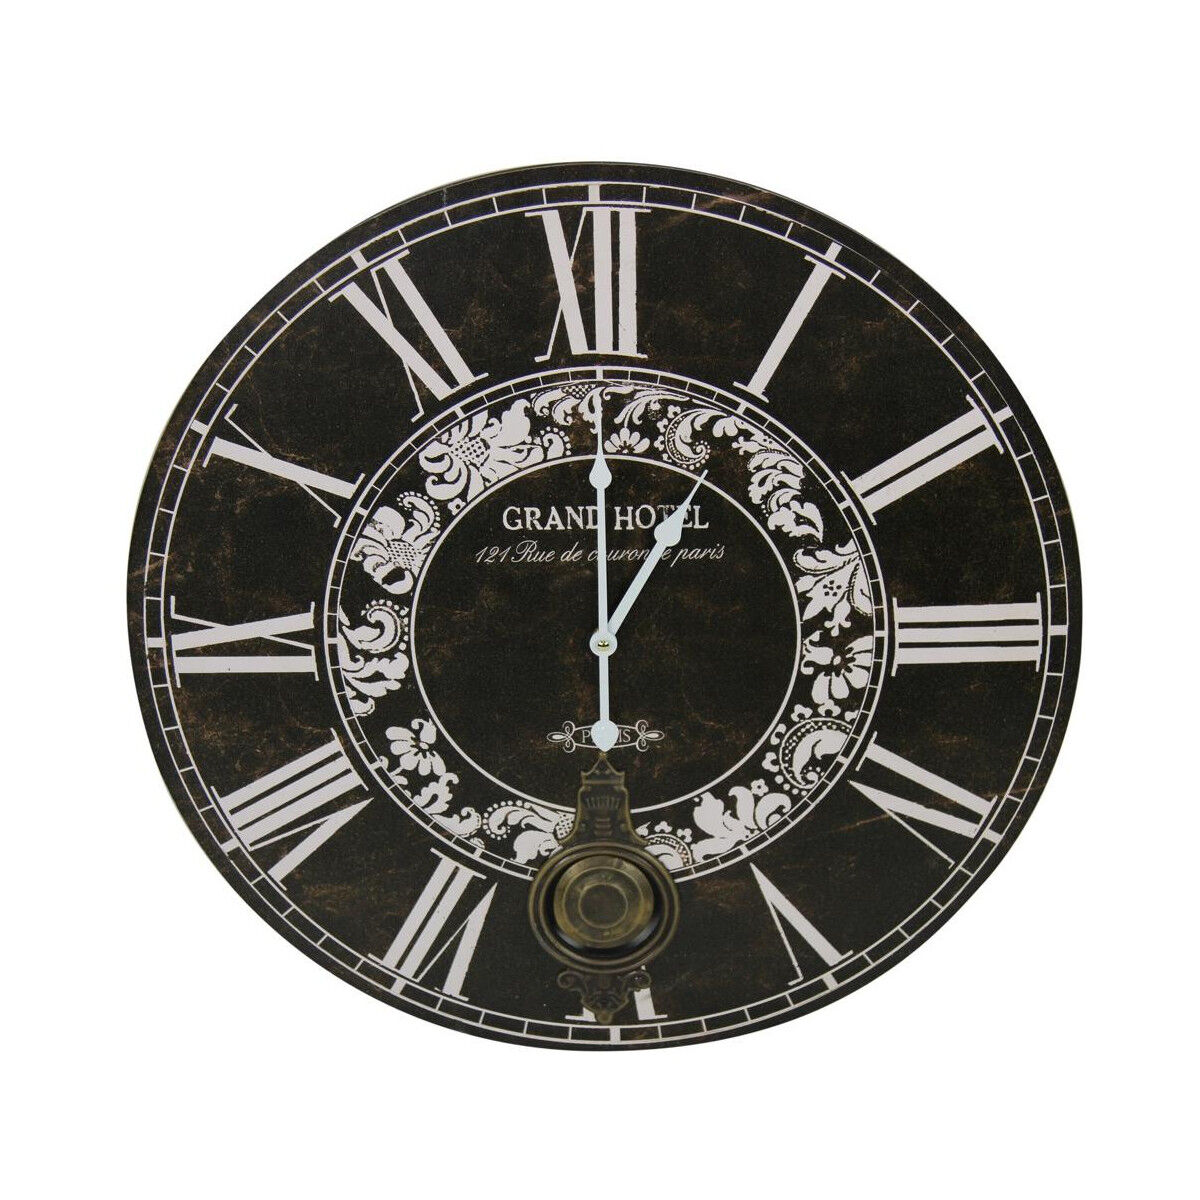 Décoration d'fois Horloge Ancienne Balancier Grand Hôtel 58cm - Bois - Noir